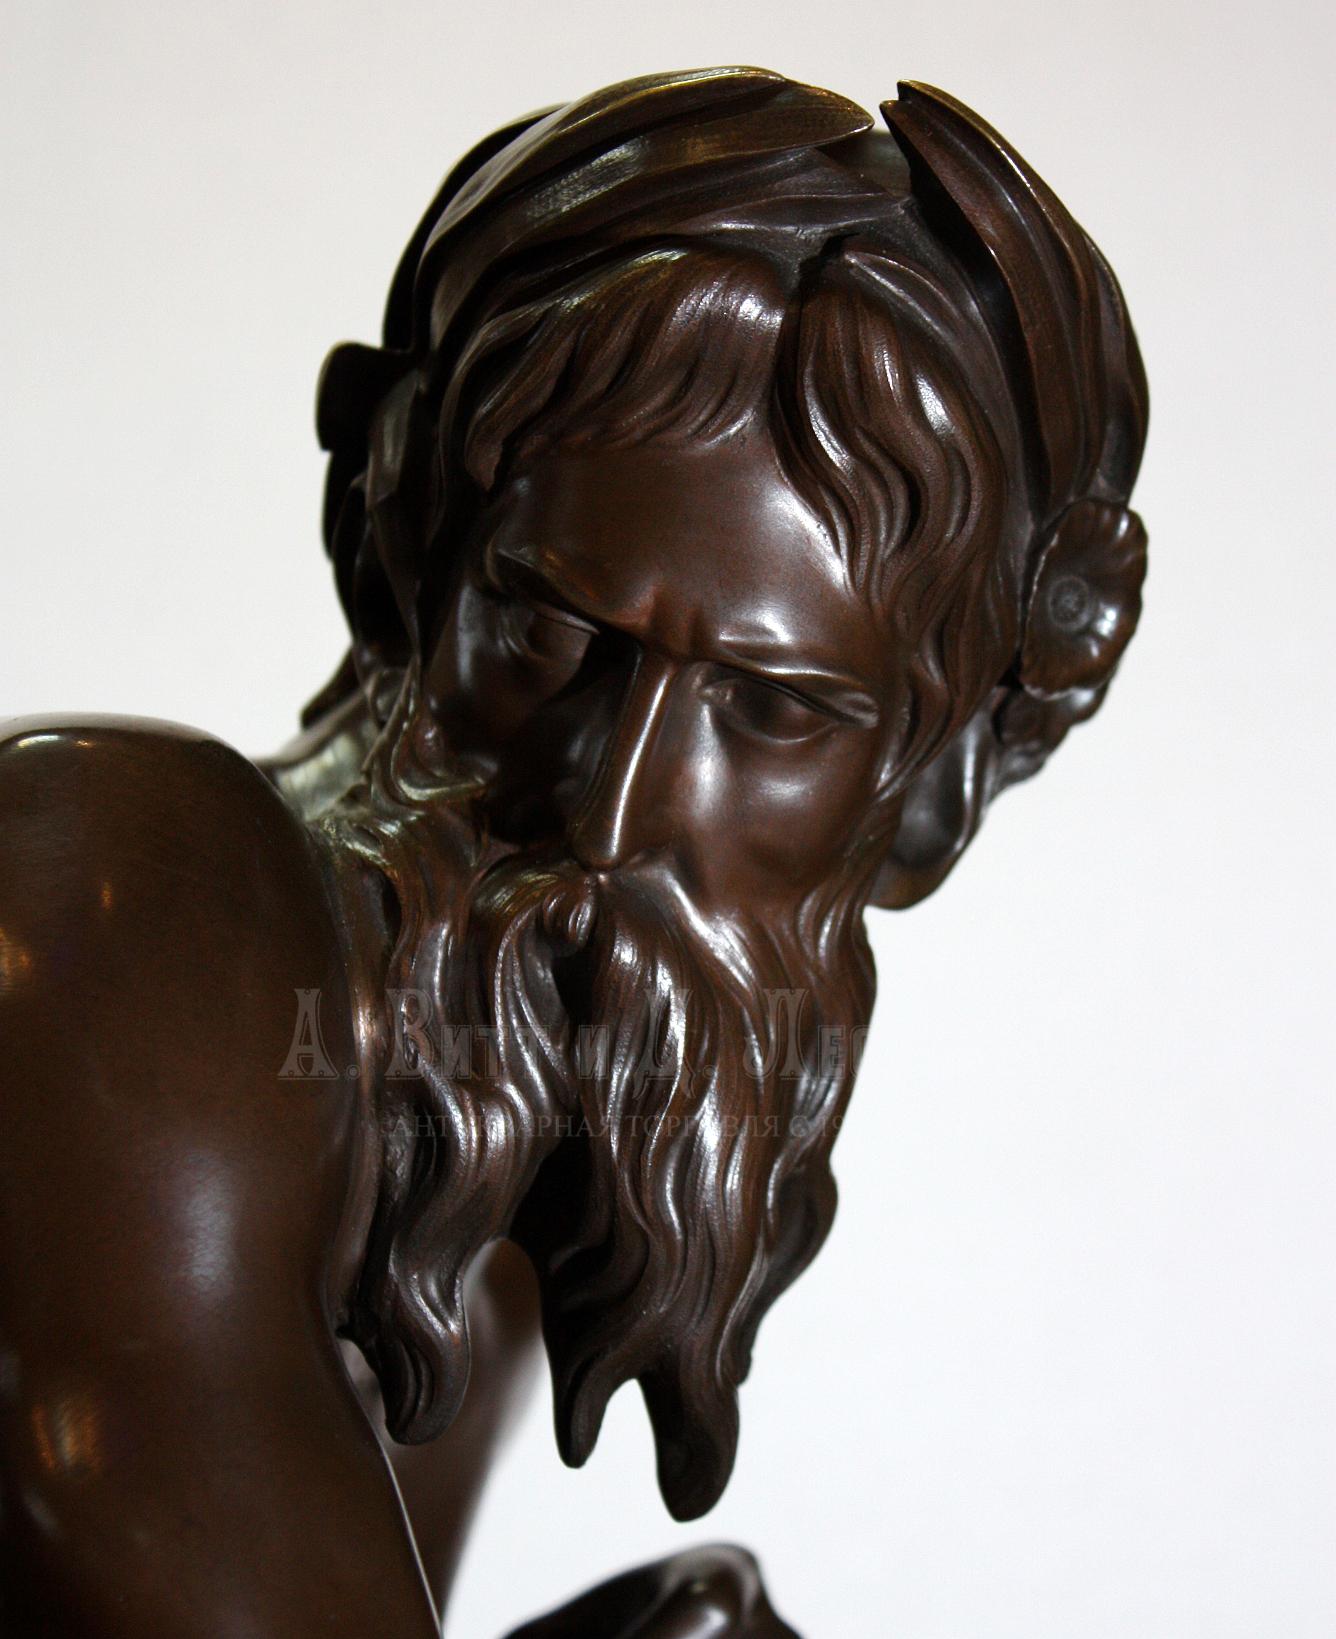 бронзовая скульптура полуобнаженного мужчины CAFFIERI